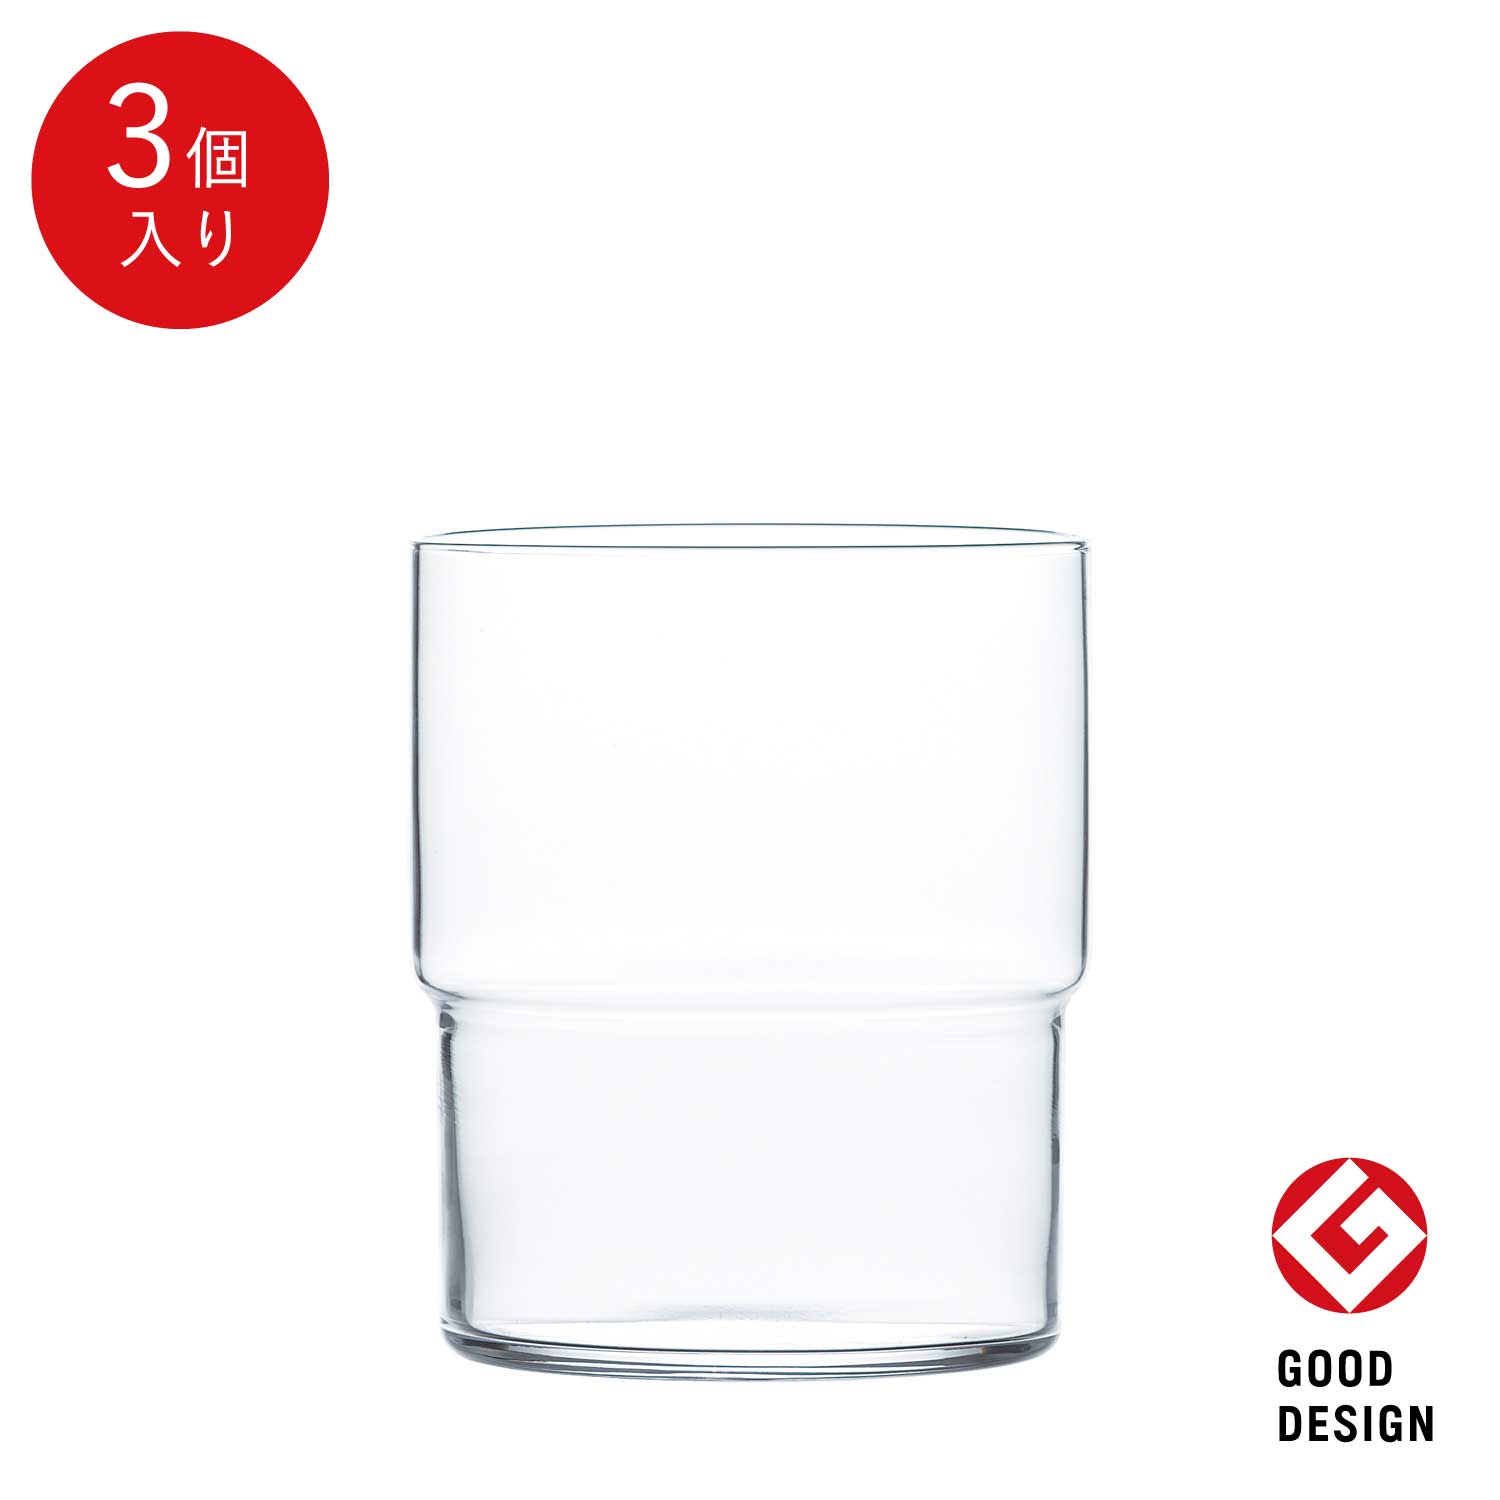 東洋佐々木ガラス タンプラー 3個薄作り強化グラス プロユース 業務用 家庭用 コップ バーアイテム ギフト 佐々木ガラス